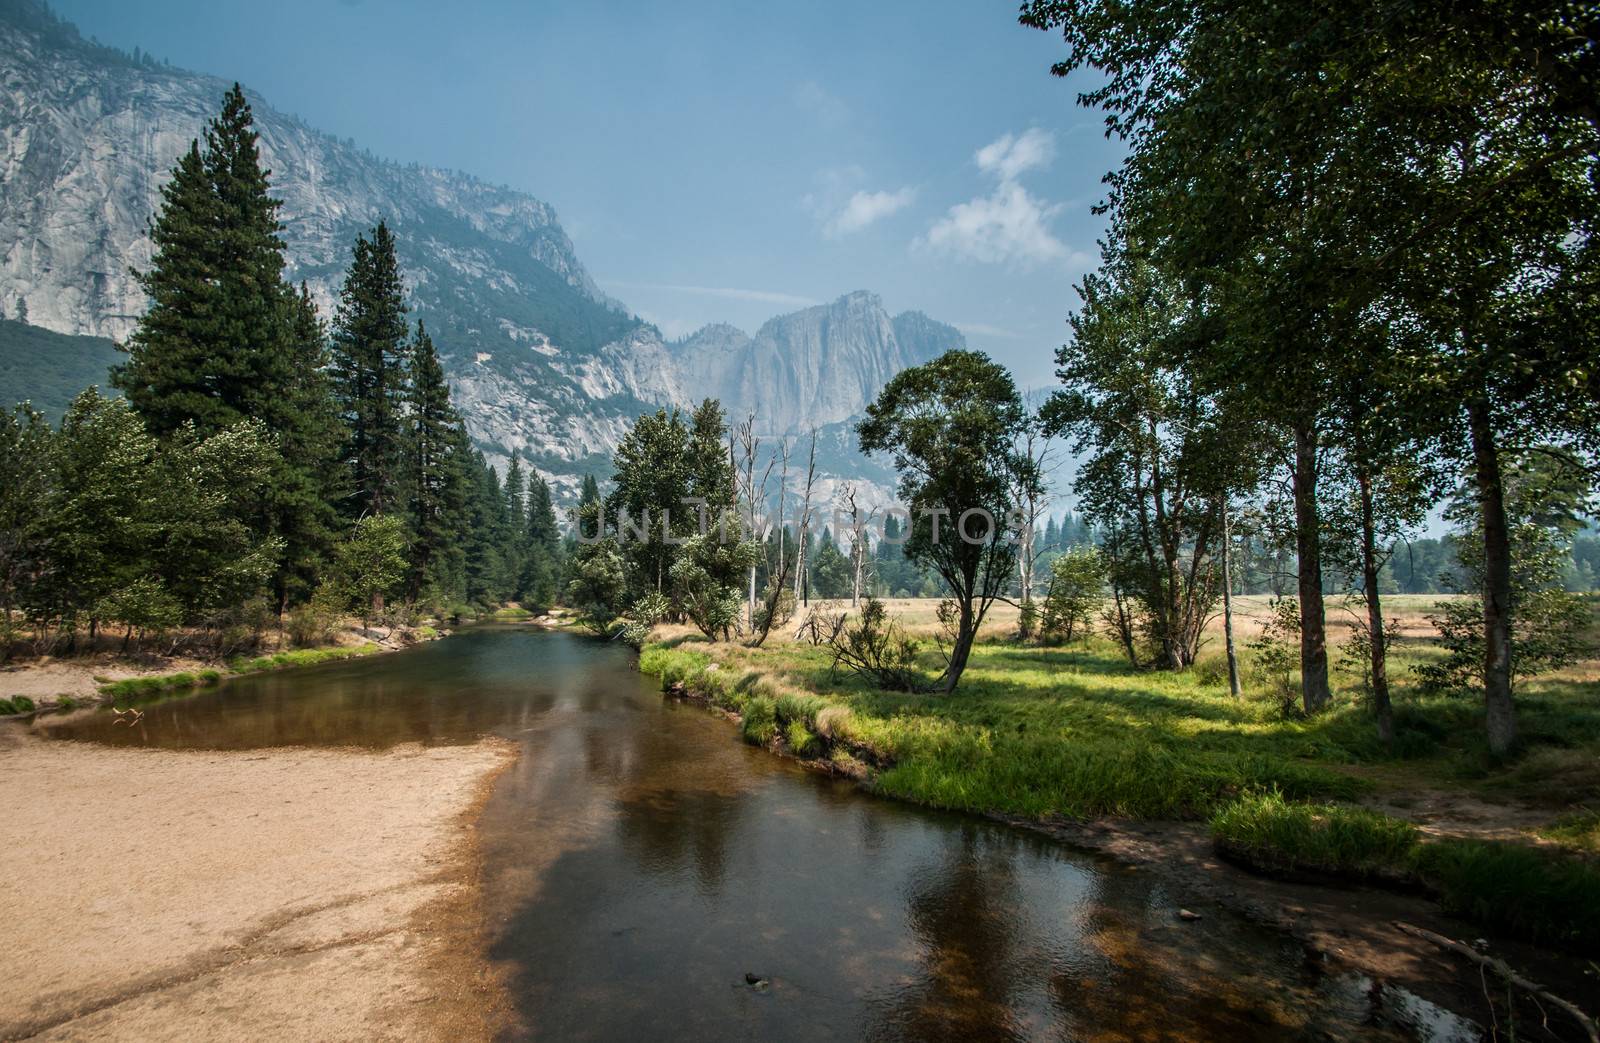 Yosemite nice river for walking